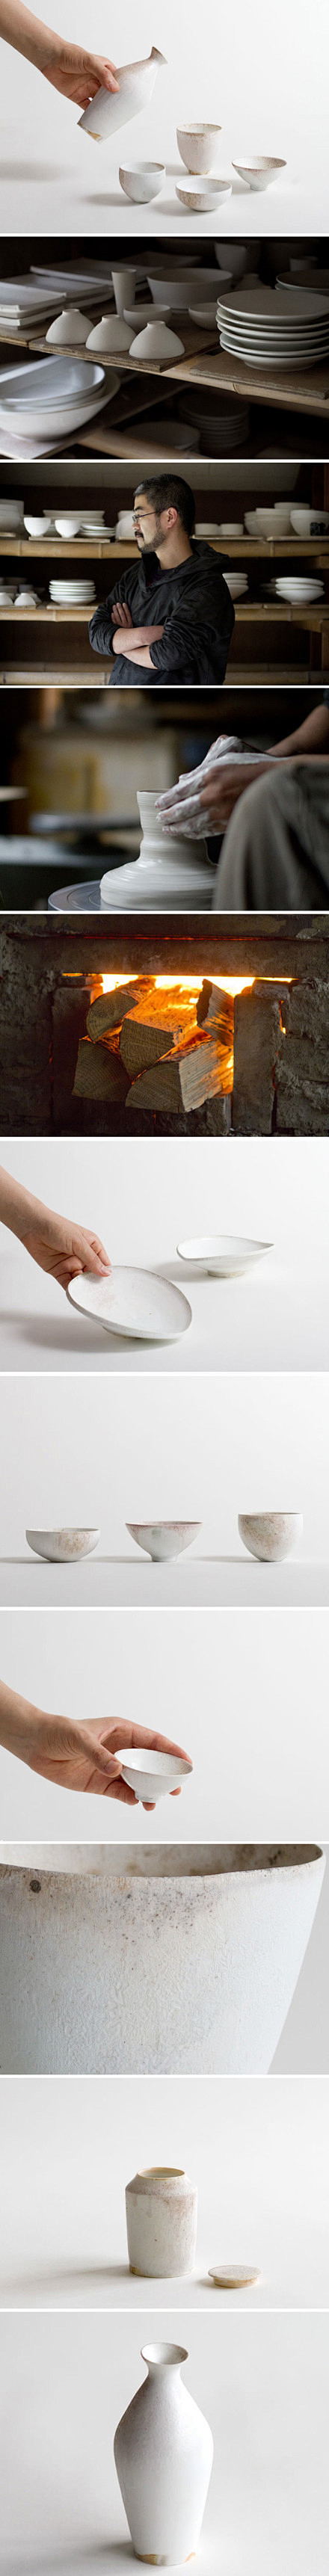 日本陶艺家田淵太郎的作品：薪窯白磁系列。